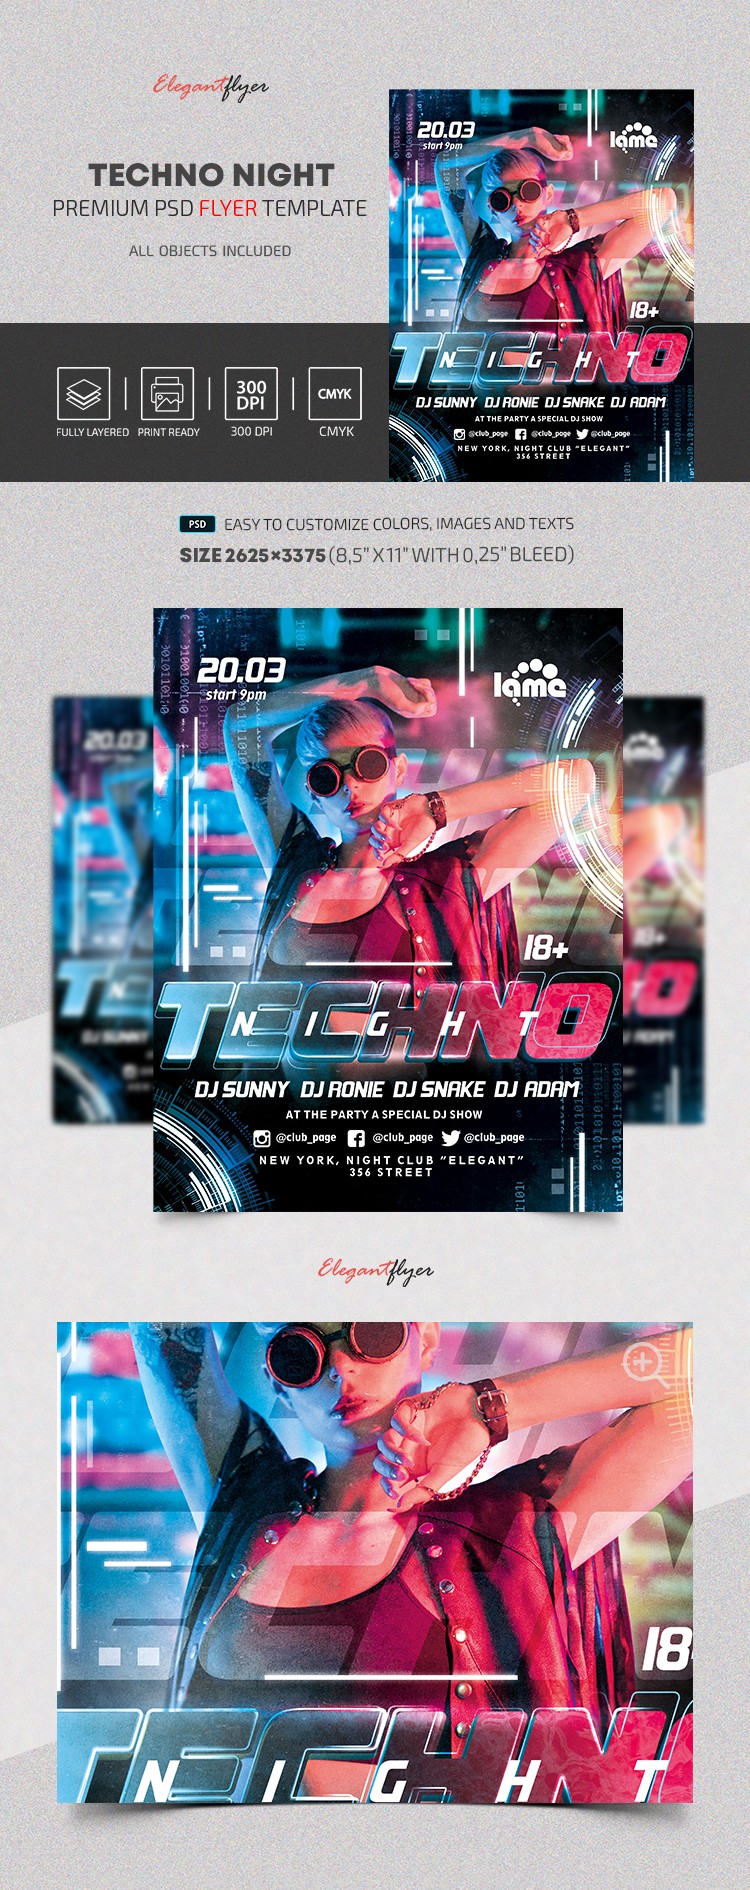 Plakat Techno Night by ElegantFlyer